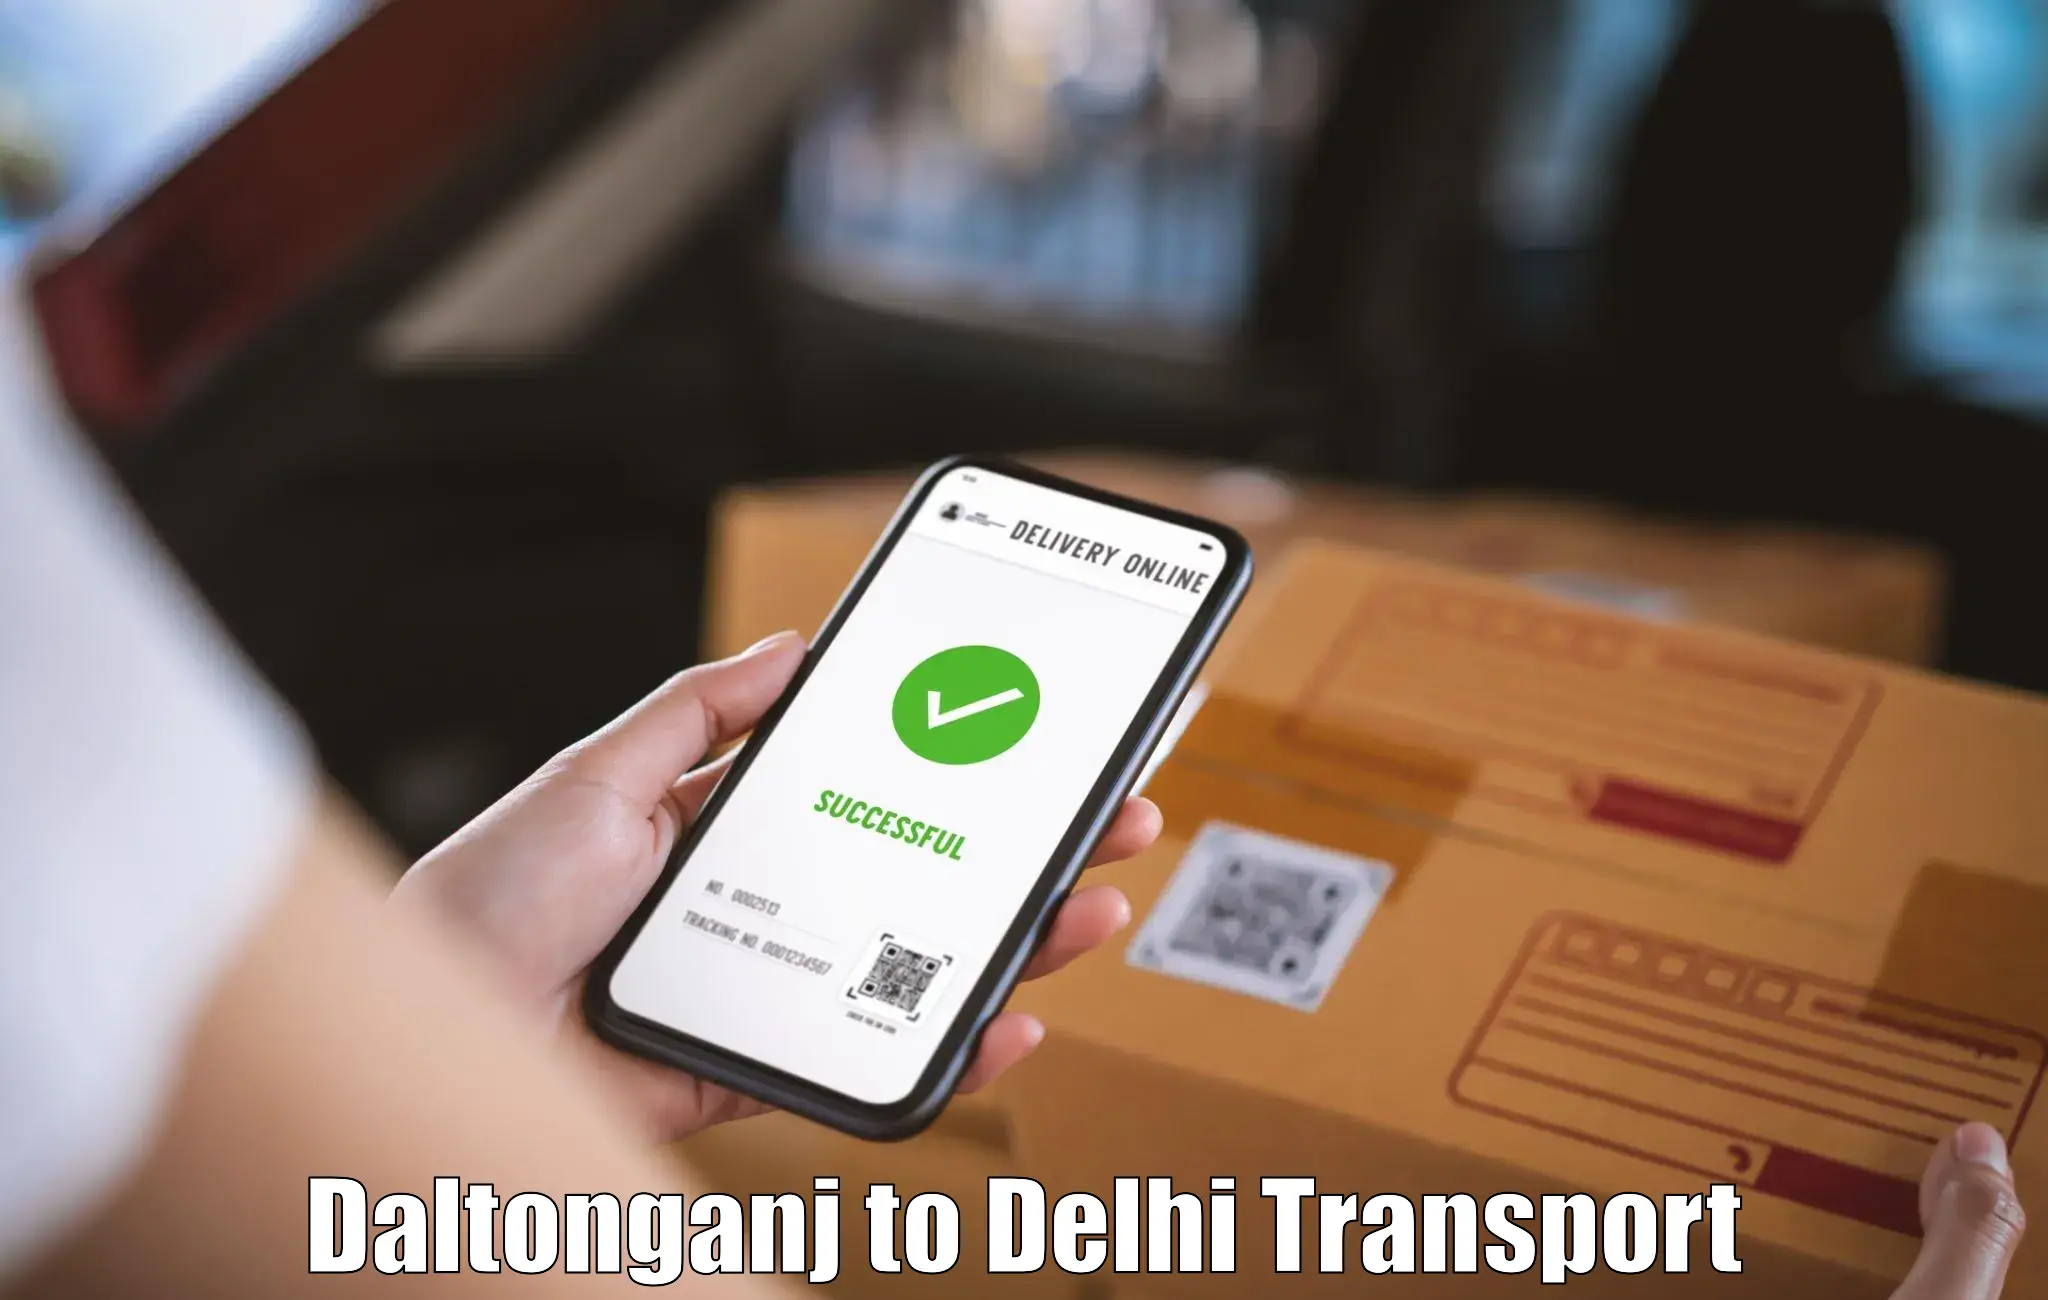 Daily transport service Daltonganj to Kalkaji